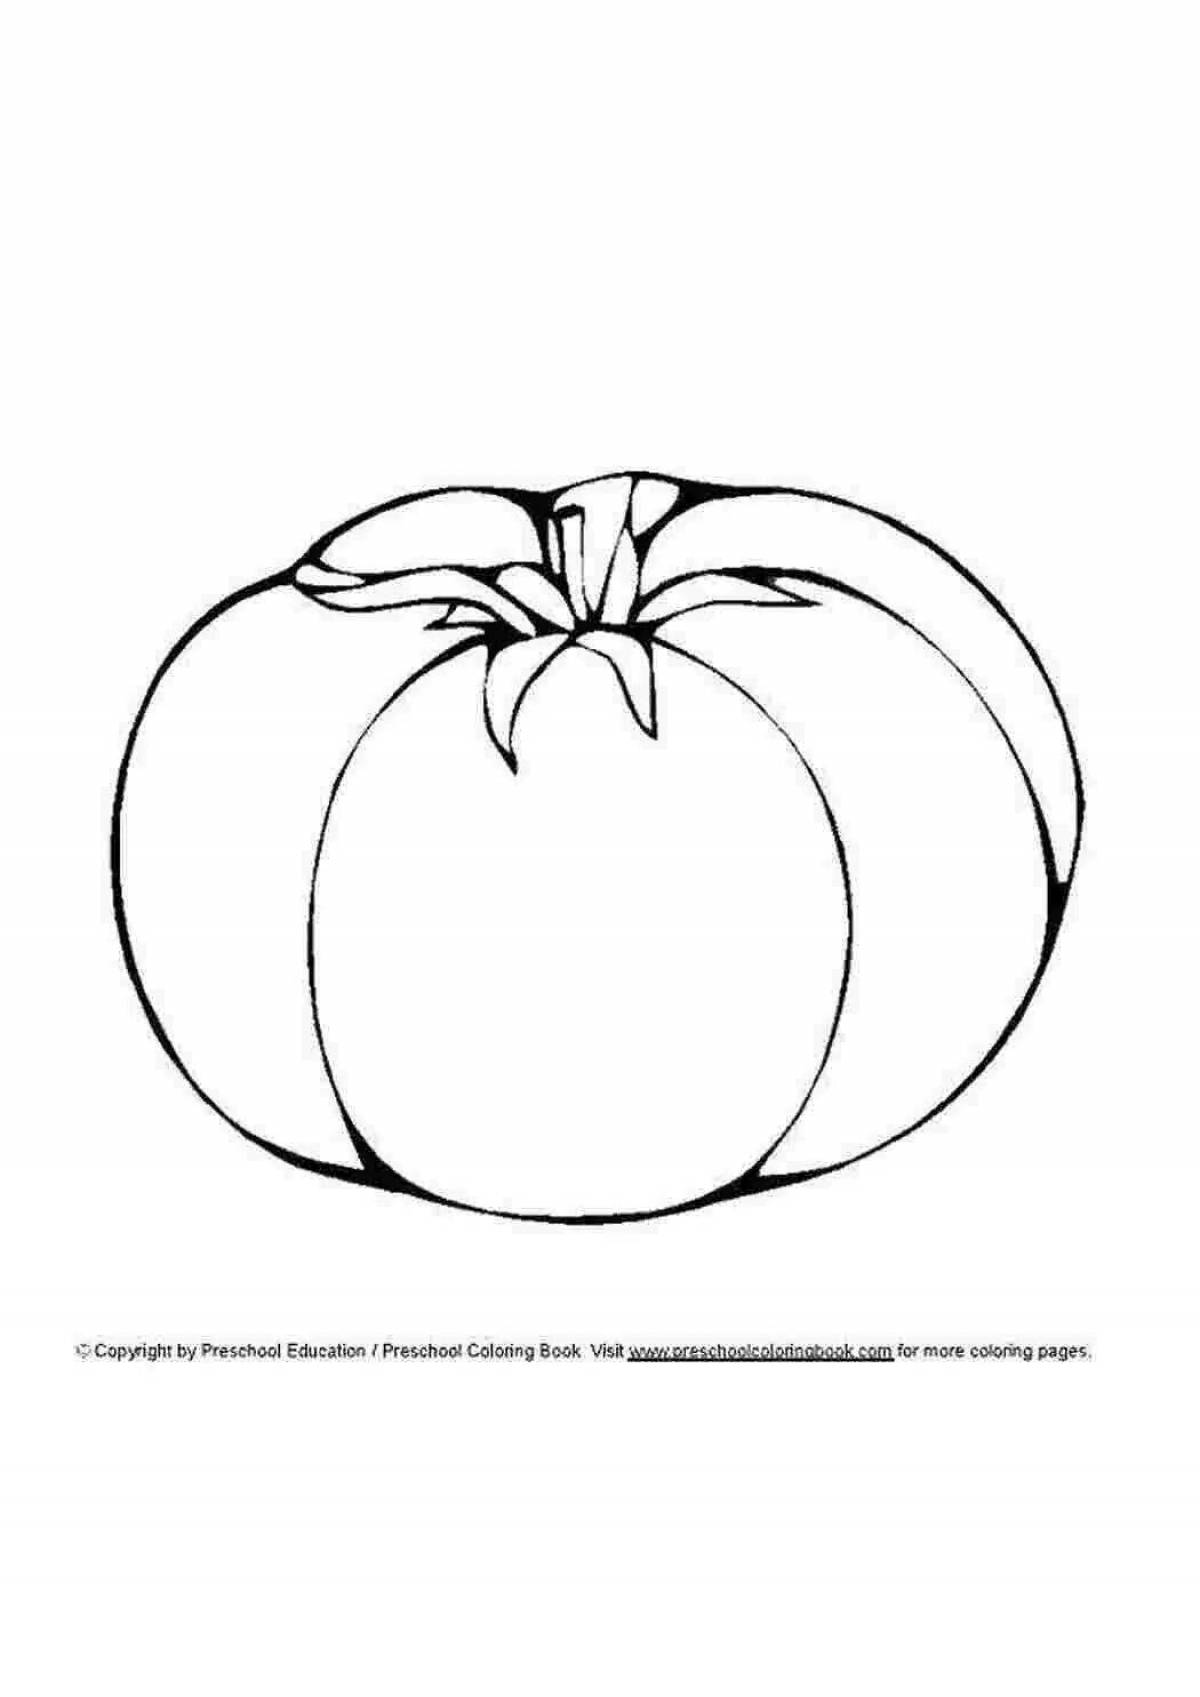 Креативная раскраска помидоров для детей 2-3 лет